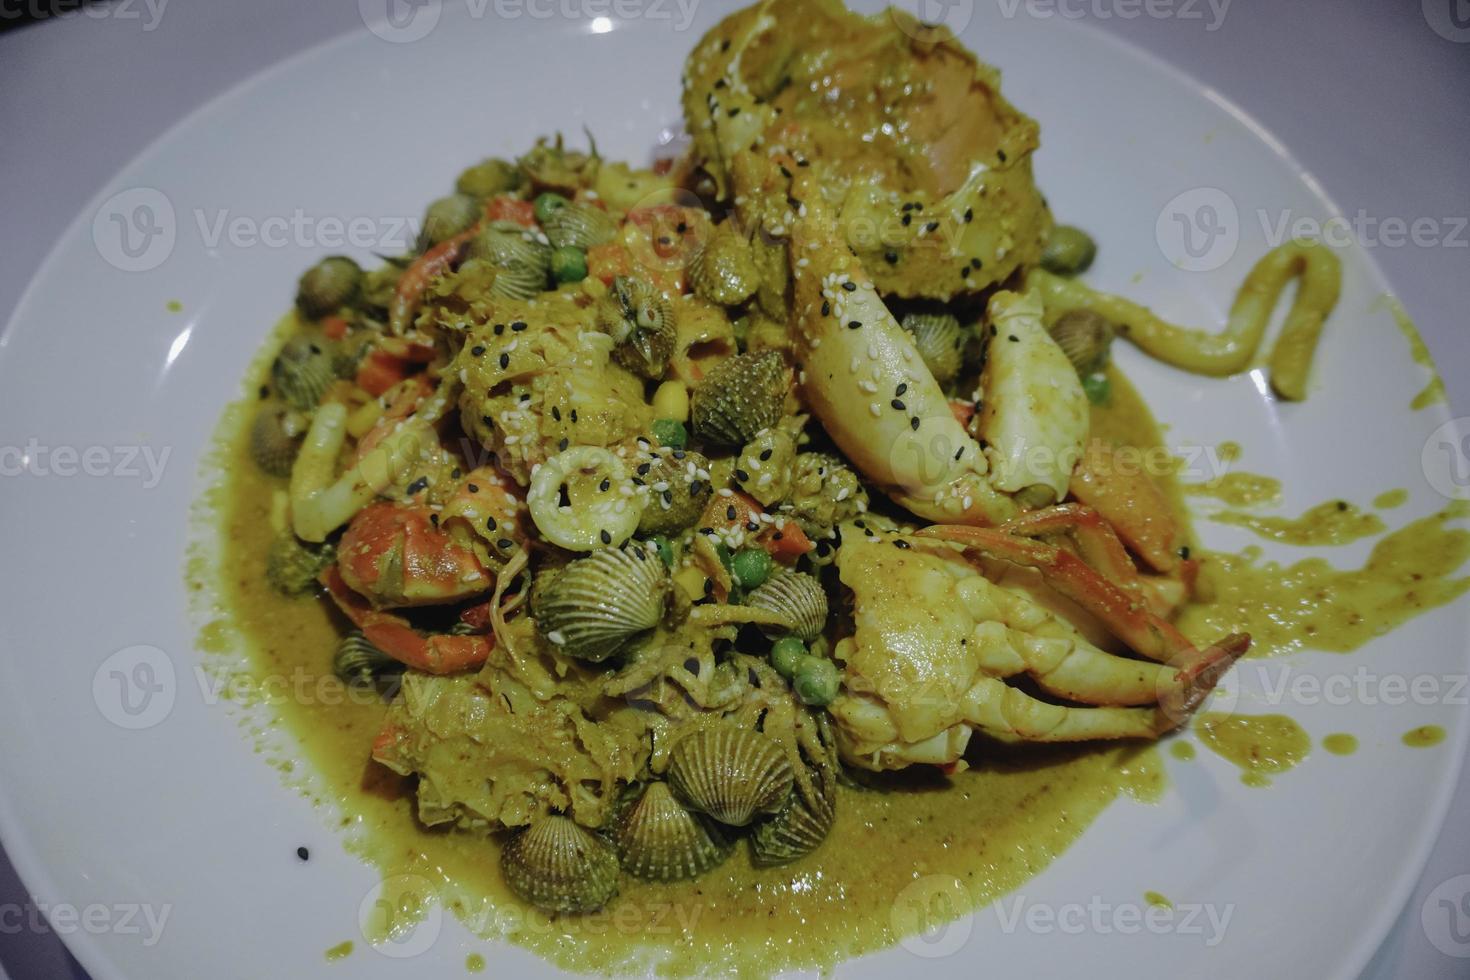 une photo d'une assiette de fruits de mer contient des crabes, des crevettes, des calmars et des palourdes